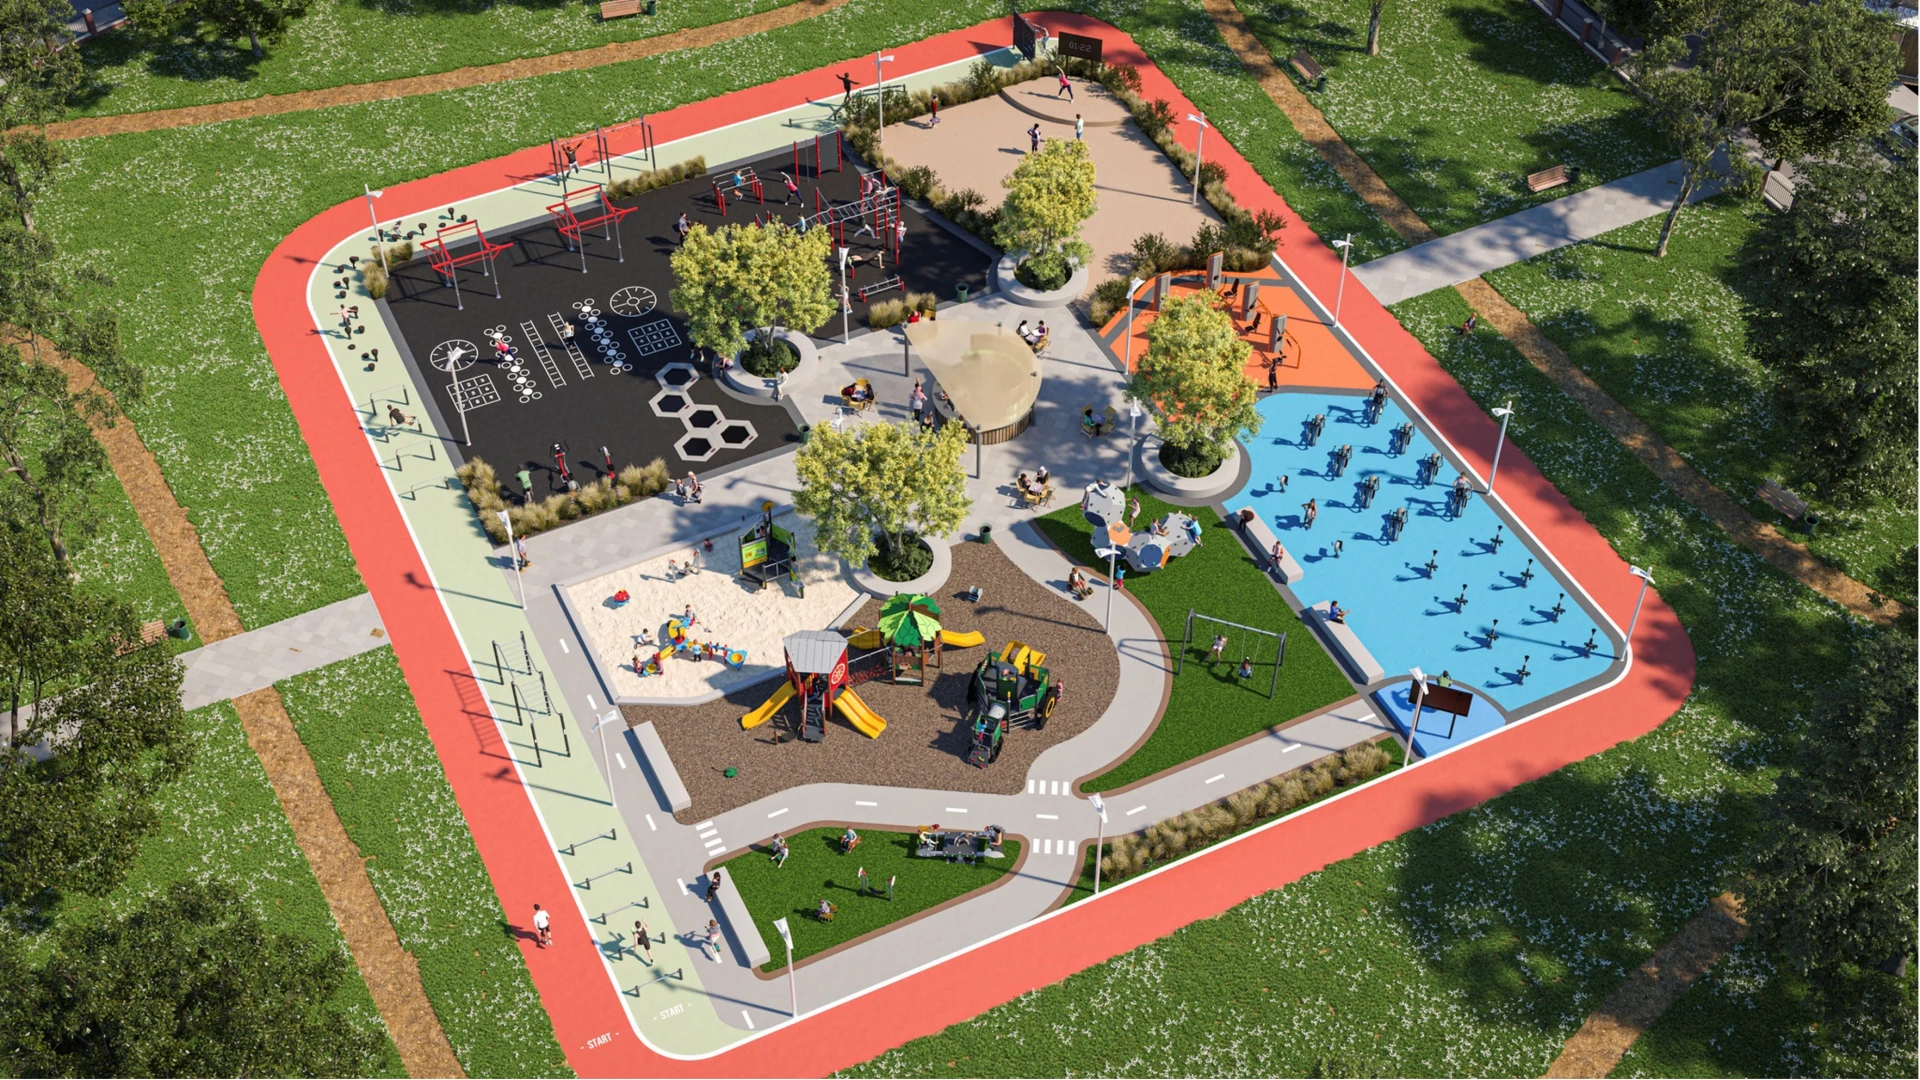 Luftaufnahme eines Spielplatzes und einer Outdoor-Fitnessanlage in einem Park.